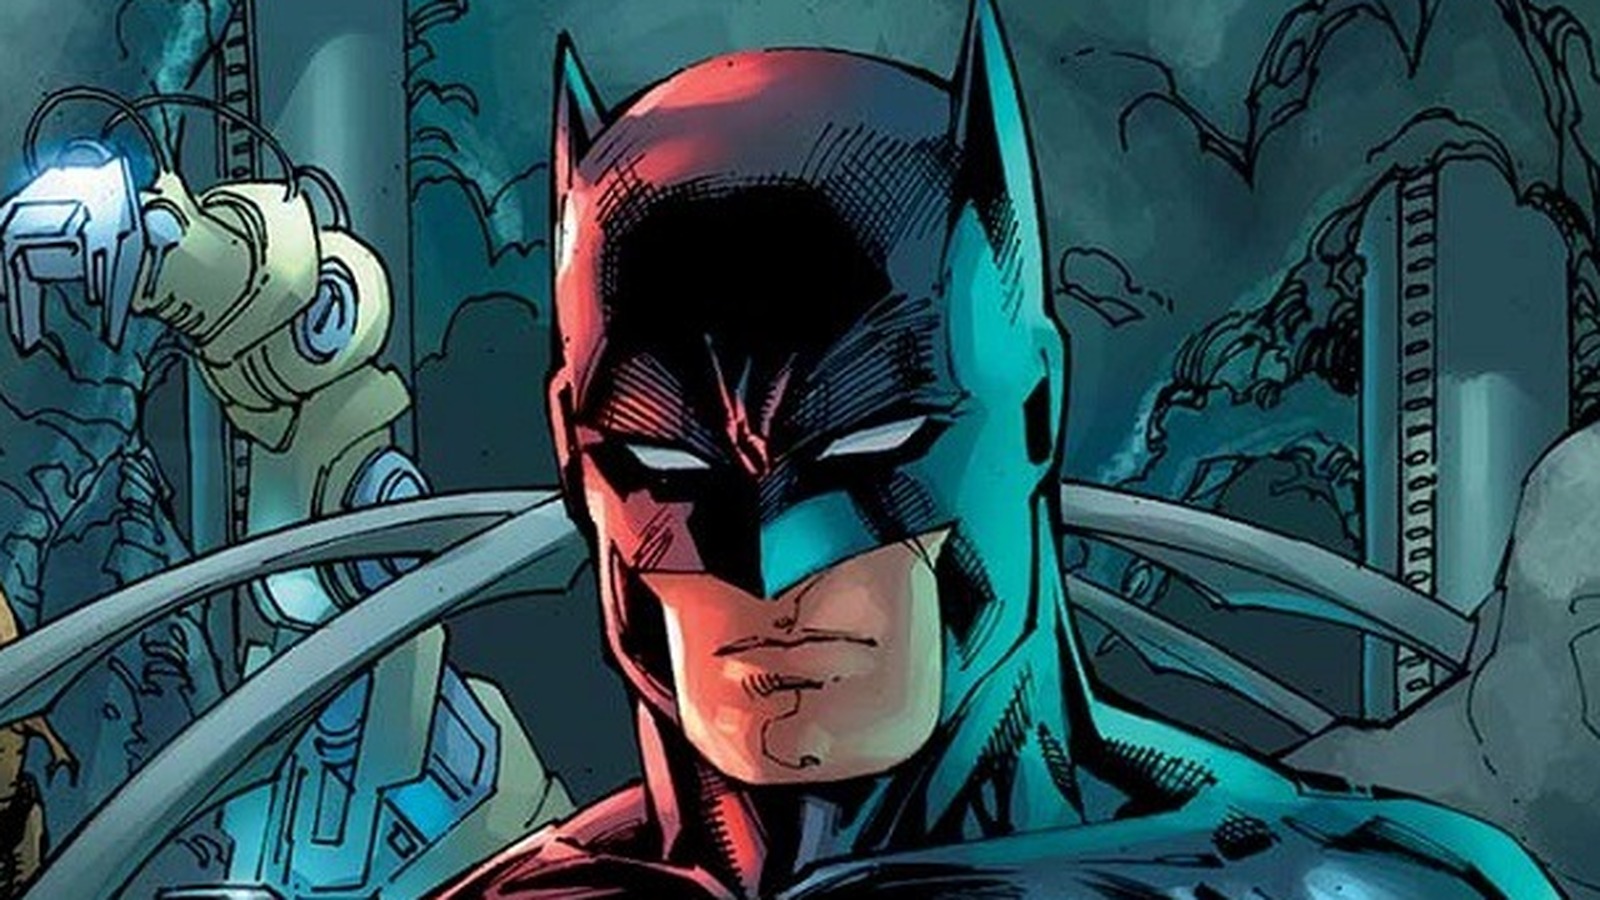 Superheroes Who Never Settled: Batman